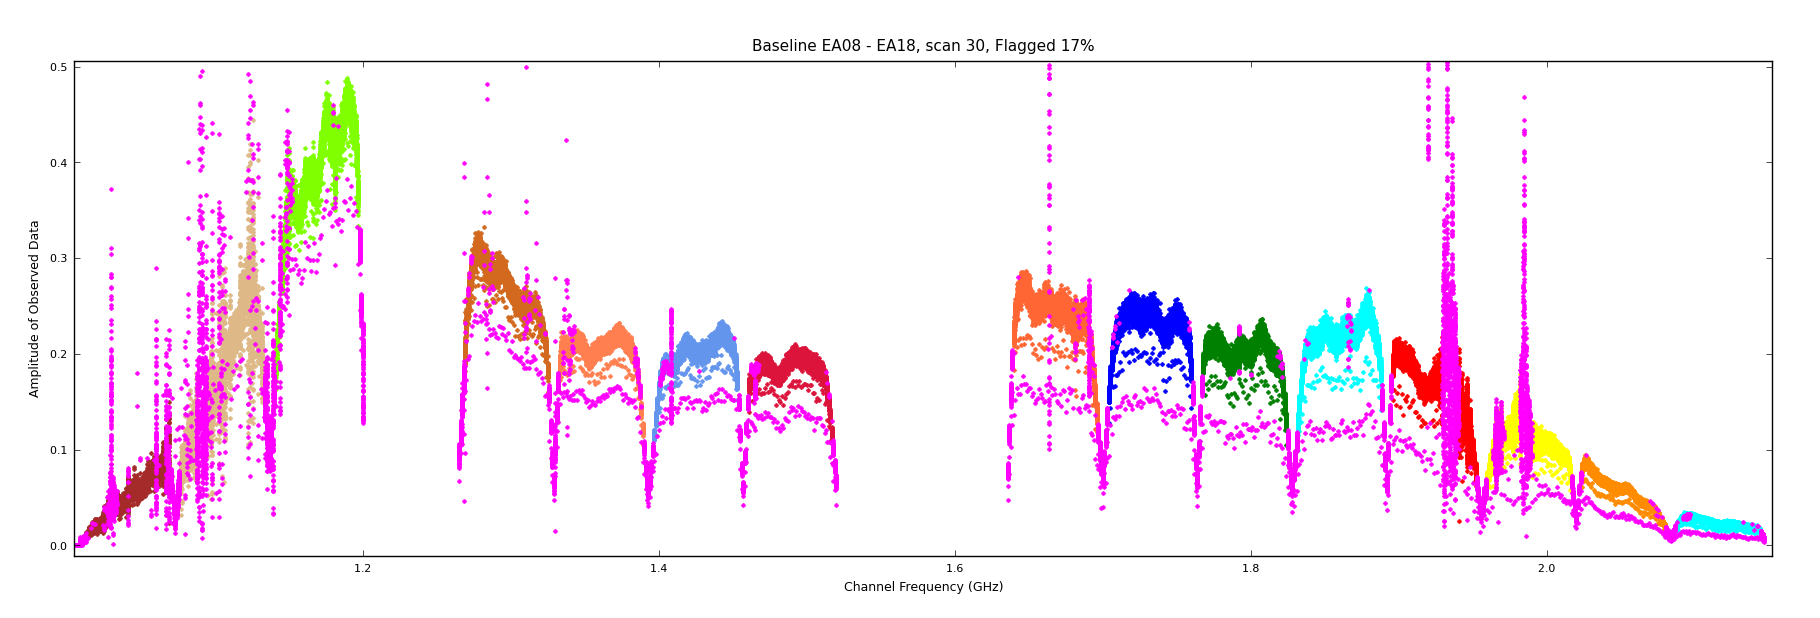 Image plot_feb_bothbands_data_rfi_ea08_18_scan30